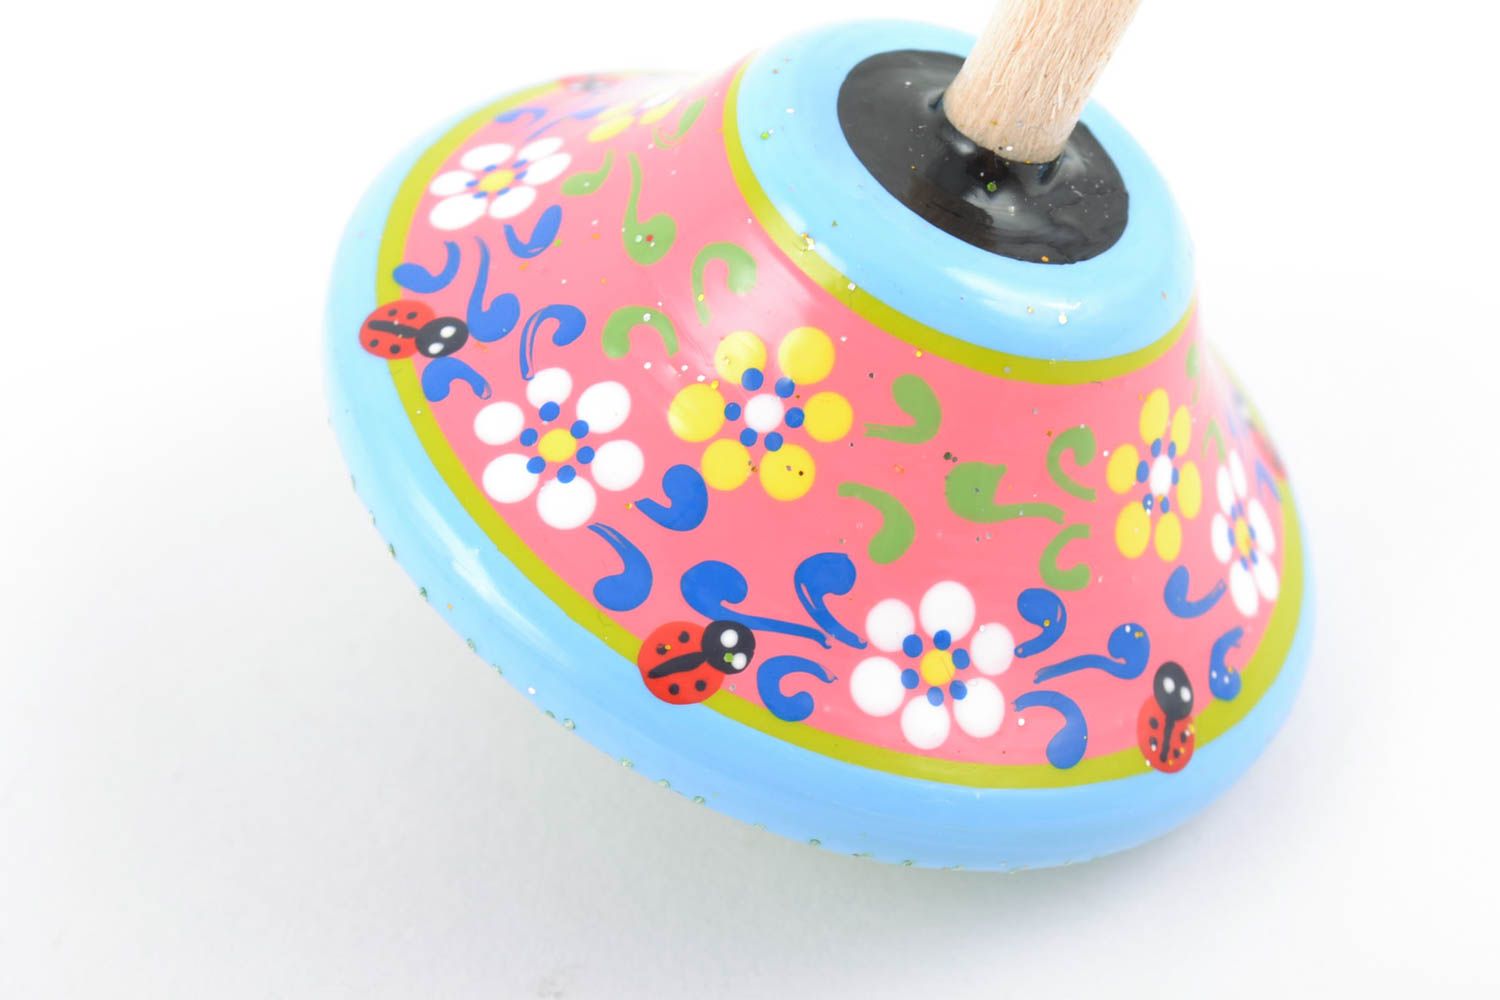 Handmade Kreisel Spielzeug aus Holz mit Ökofarben bemalt schön foto 5